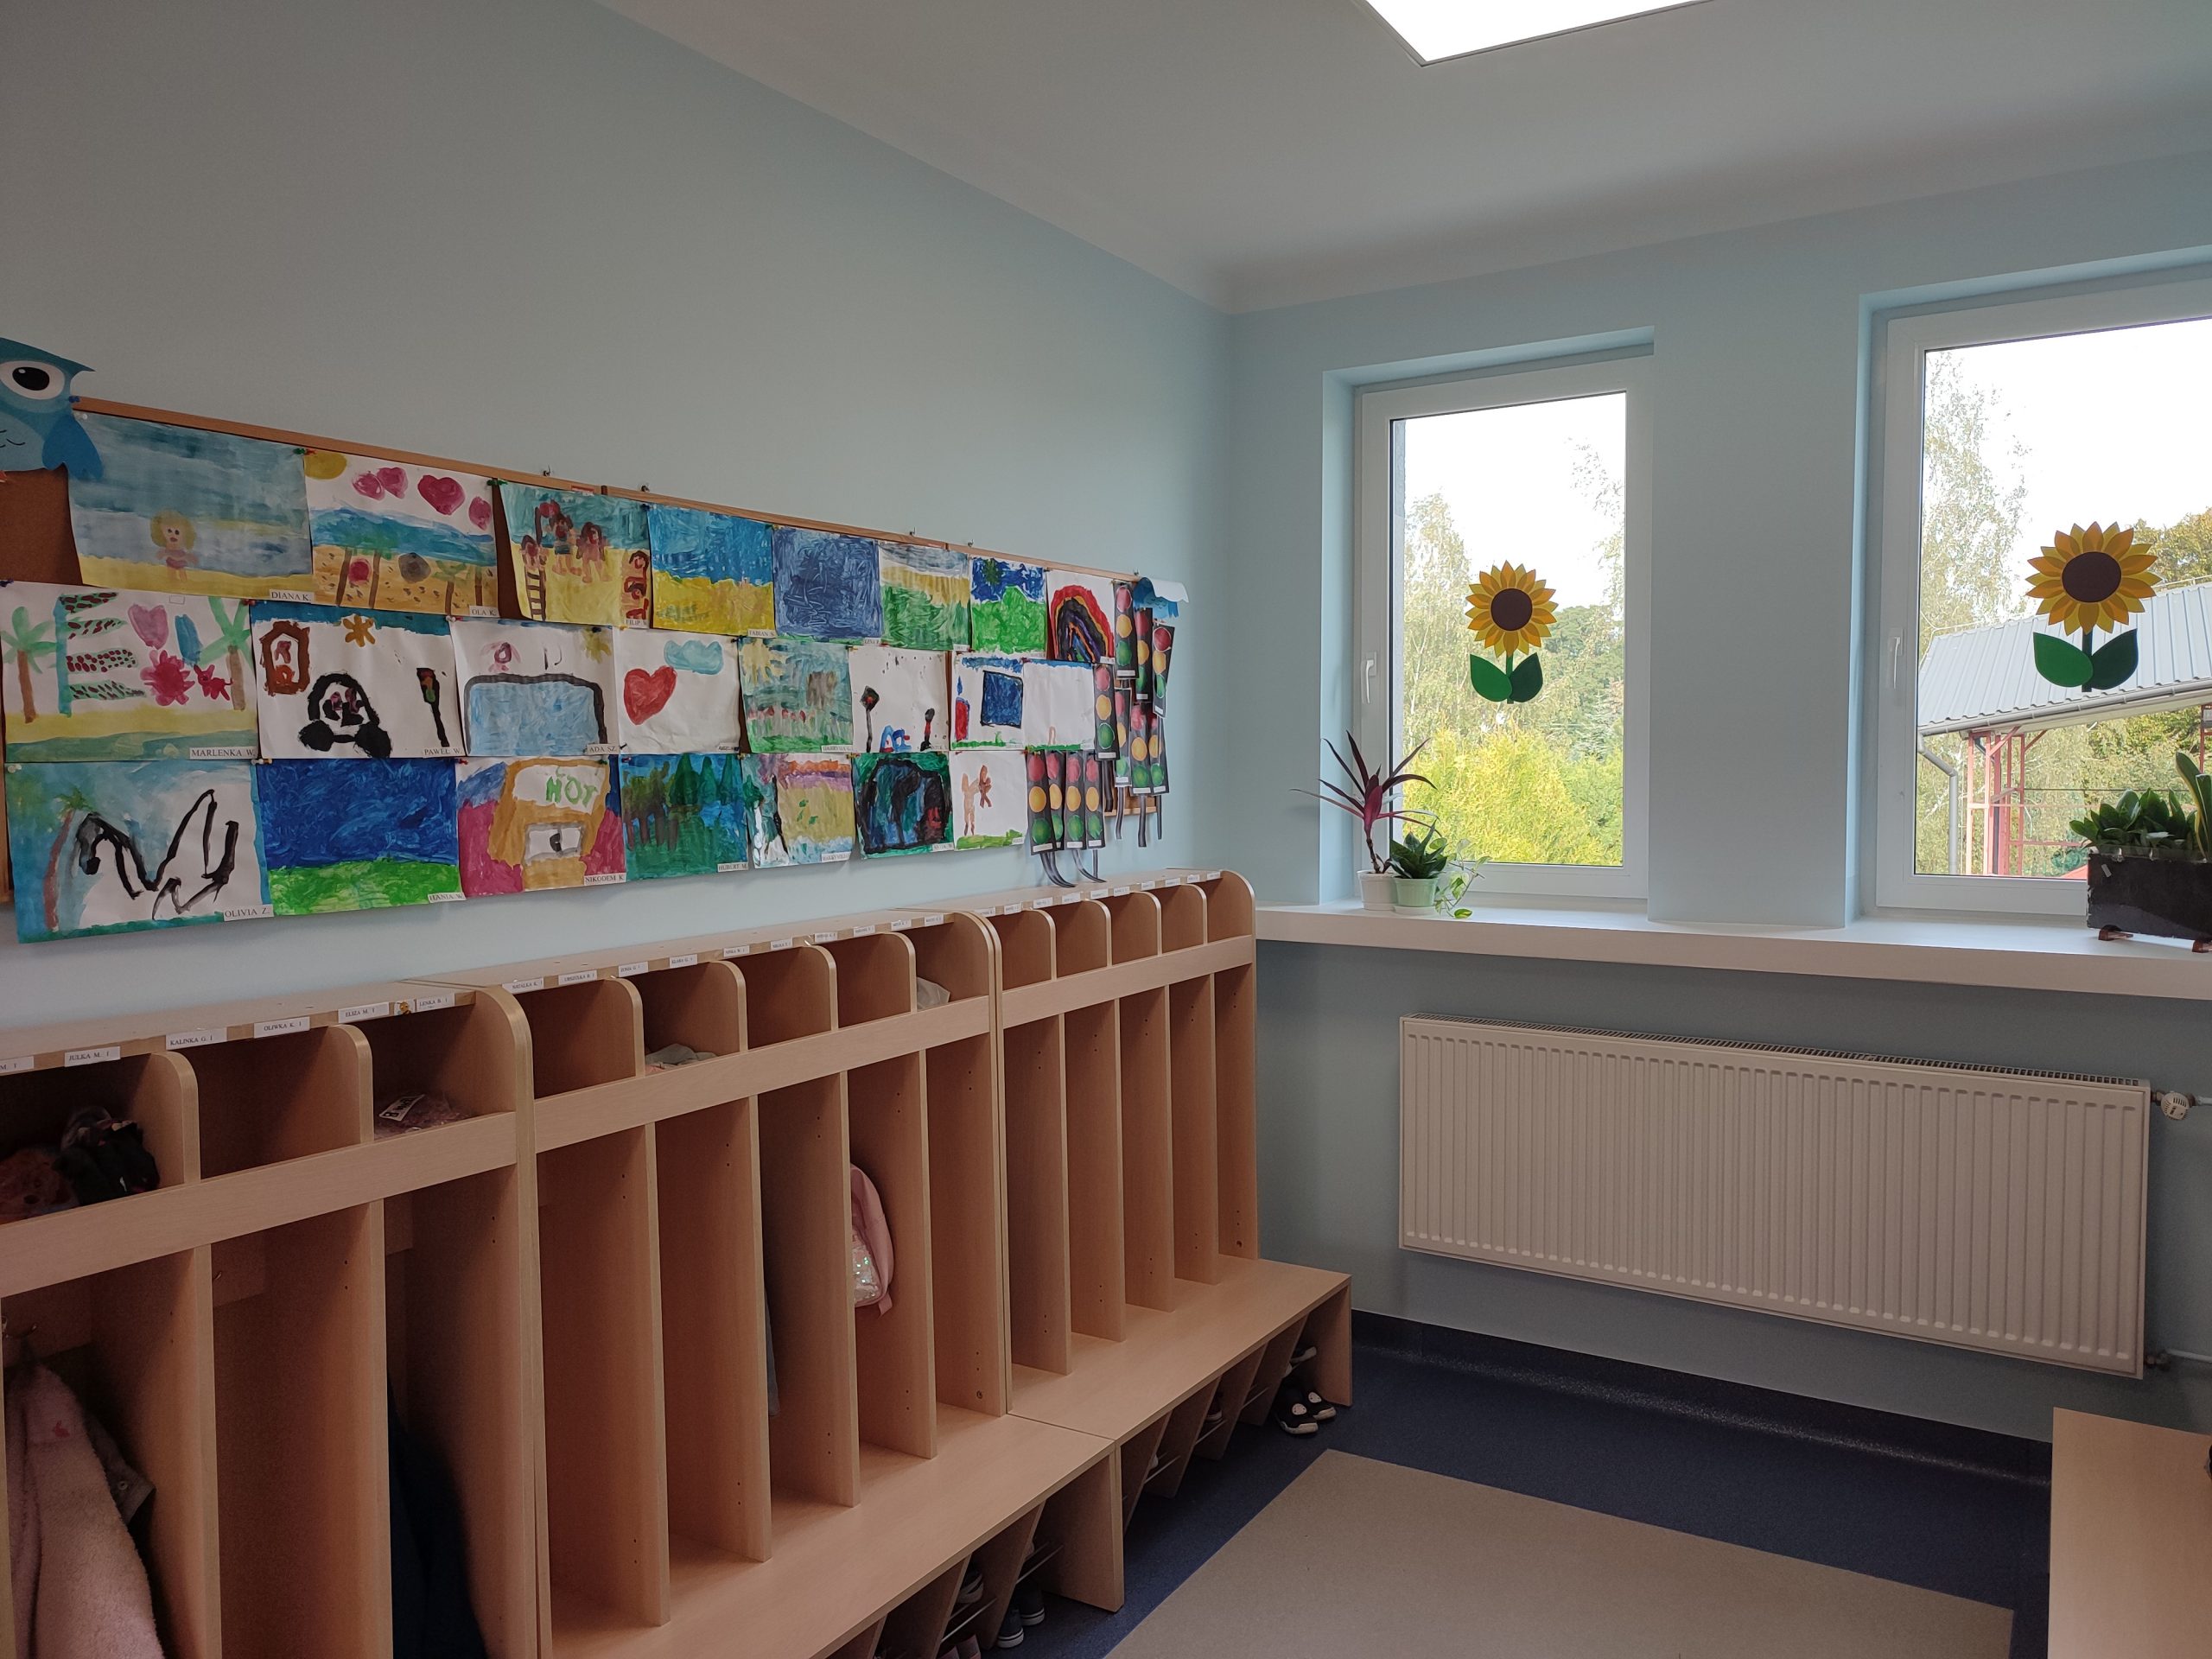 szafki szatniowe z przegródkami w jasnym kolorze drewna, nad nimi kolorowe prace dzieci wykonane na kartkach papieru, po lewej stronie okno z przyklejonym na szybie słonecznikiem, na parapecie kwiatek doniczkowy